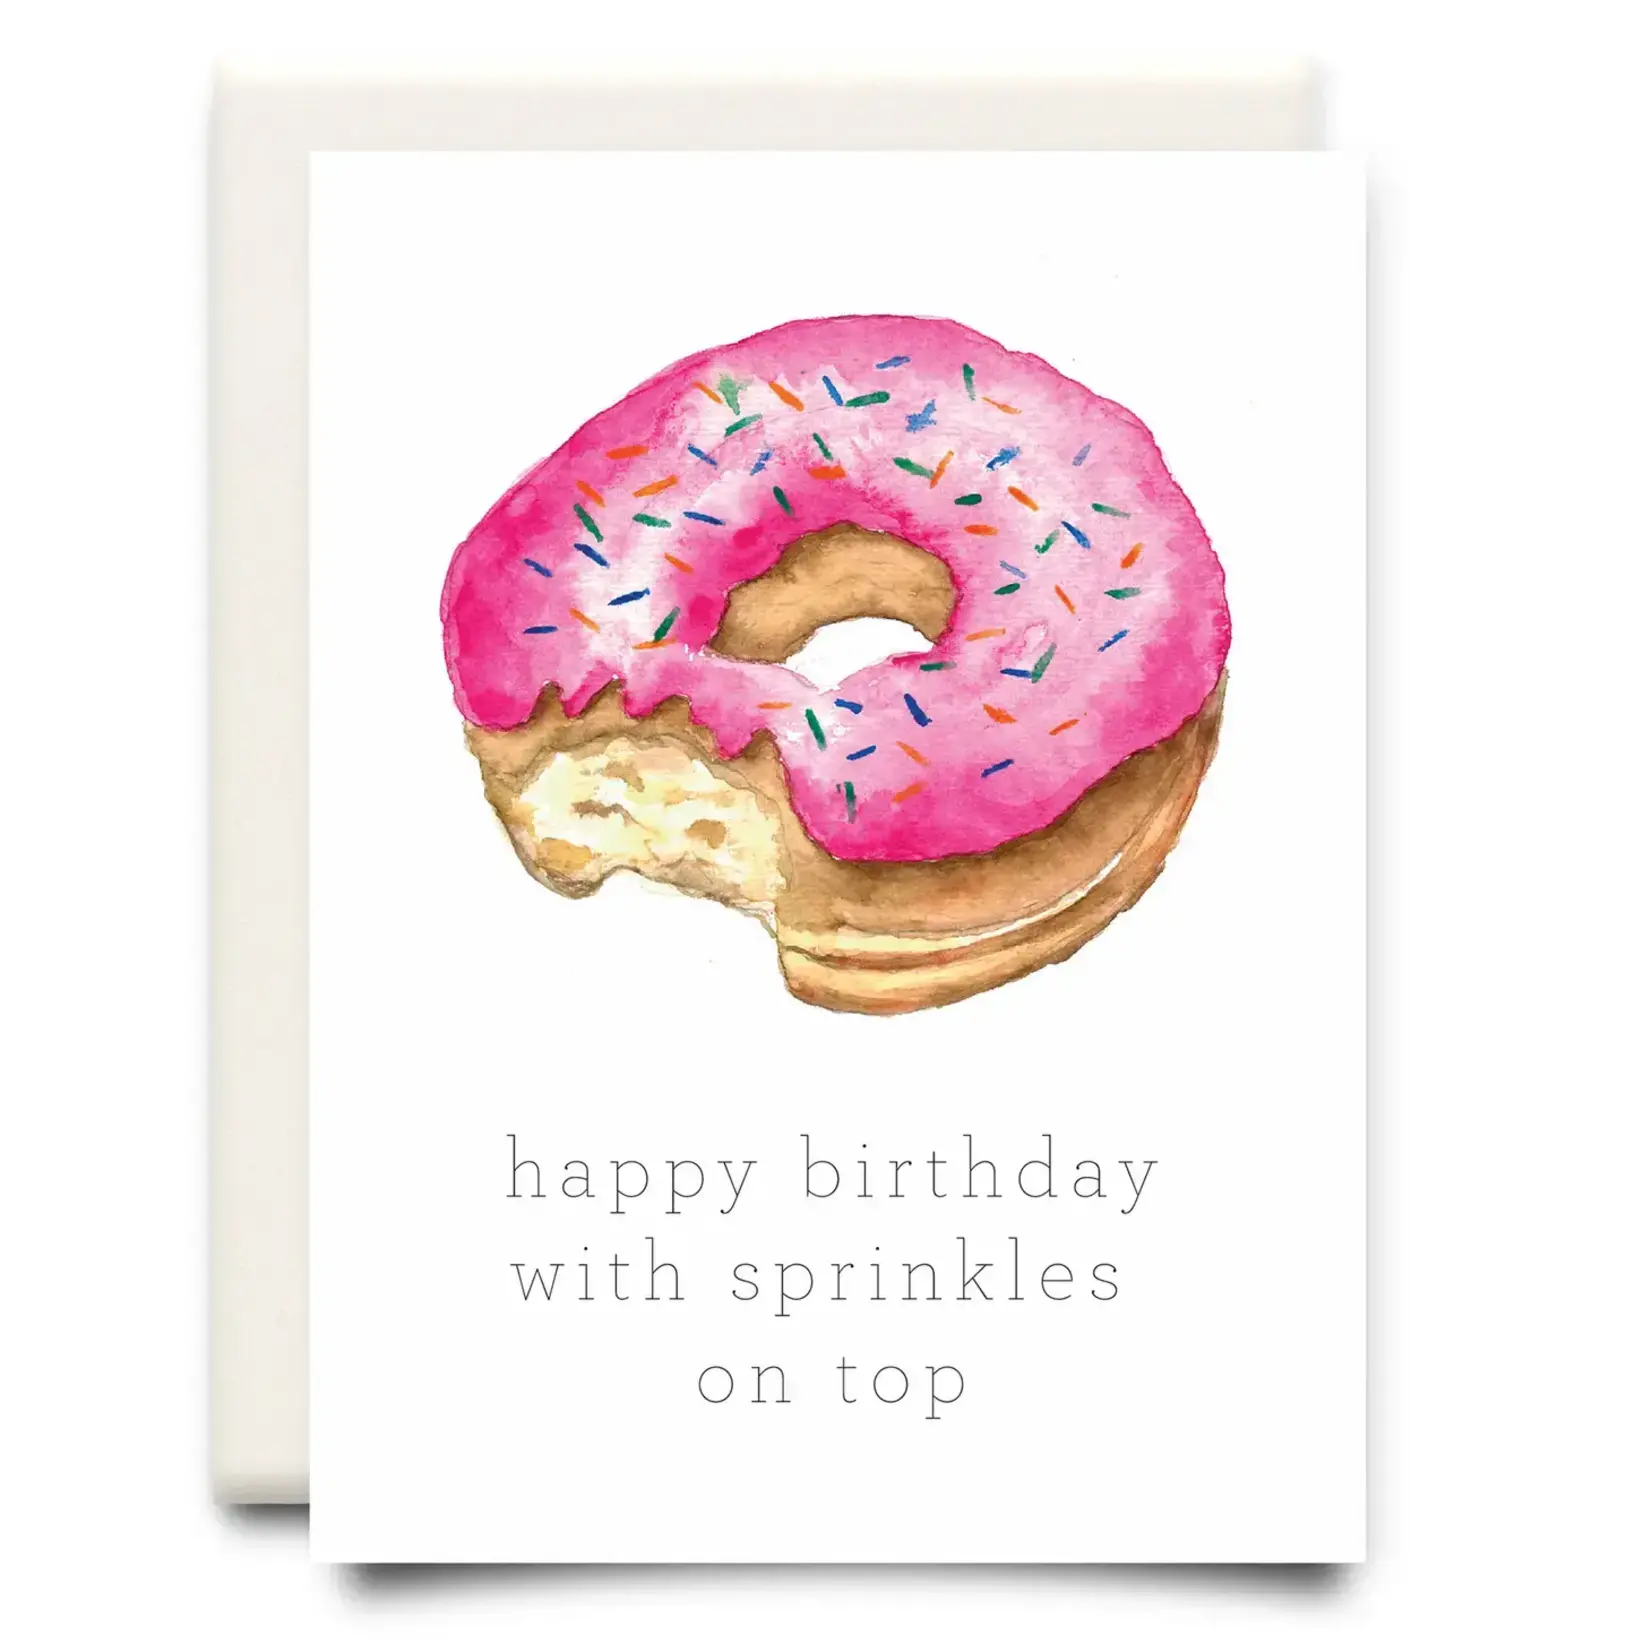 Sprinkles On Top - Greeting Card